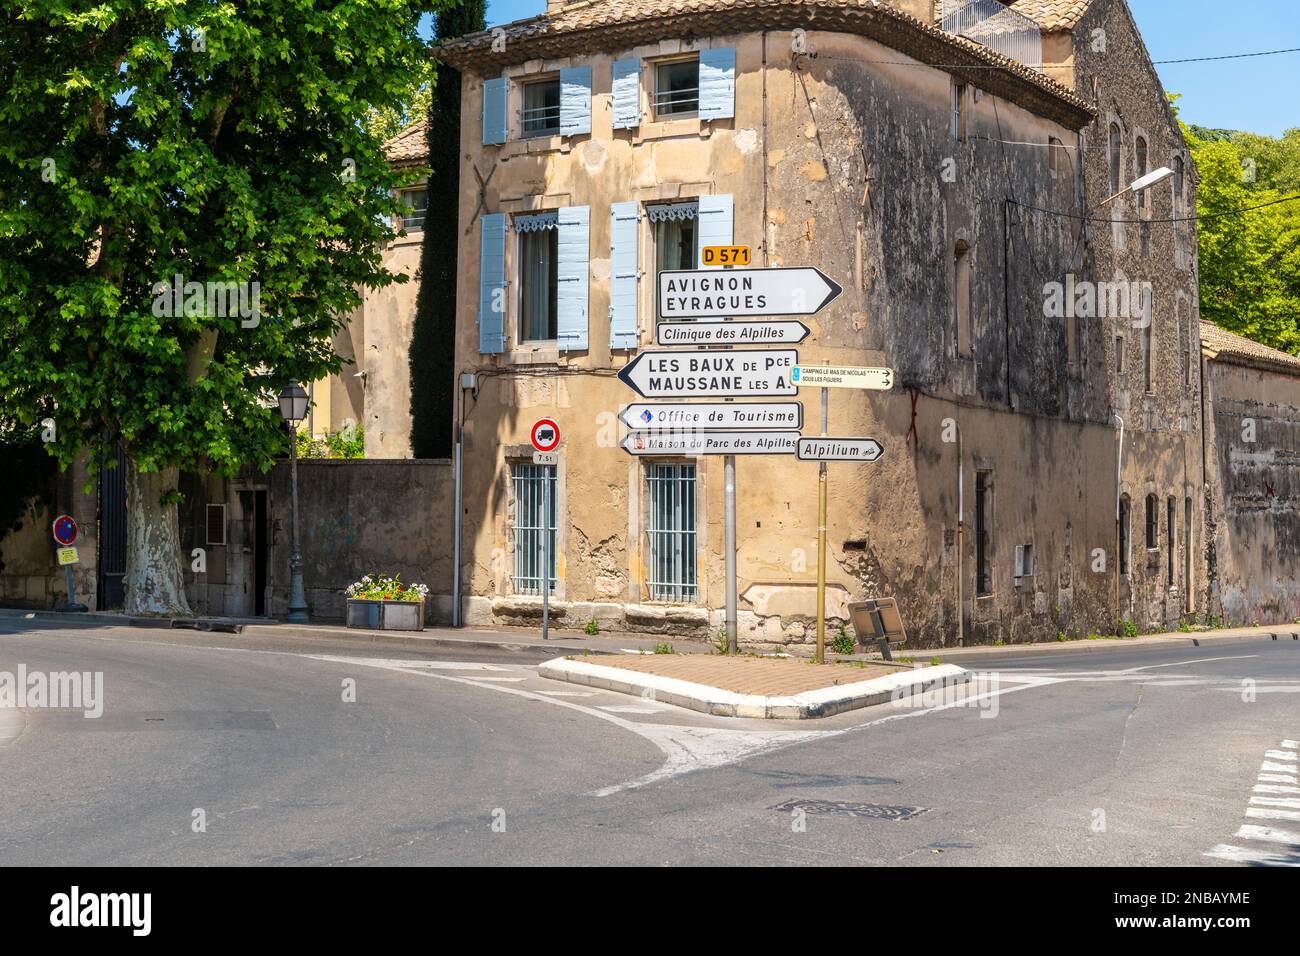 Cartelli che indicano Avignone, le Alpilles e l'ufficio del turismo in un incrocio nel centro medievale di Saint-Remy-de-Provence, Francia Foto Stock